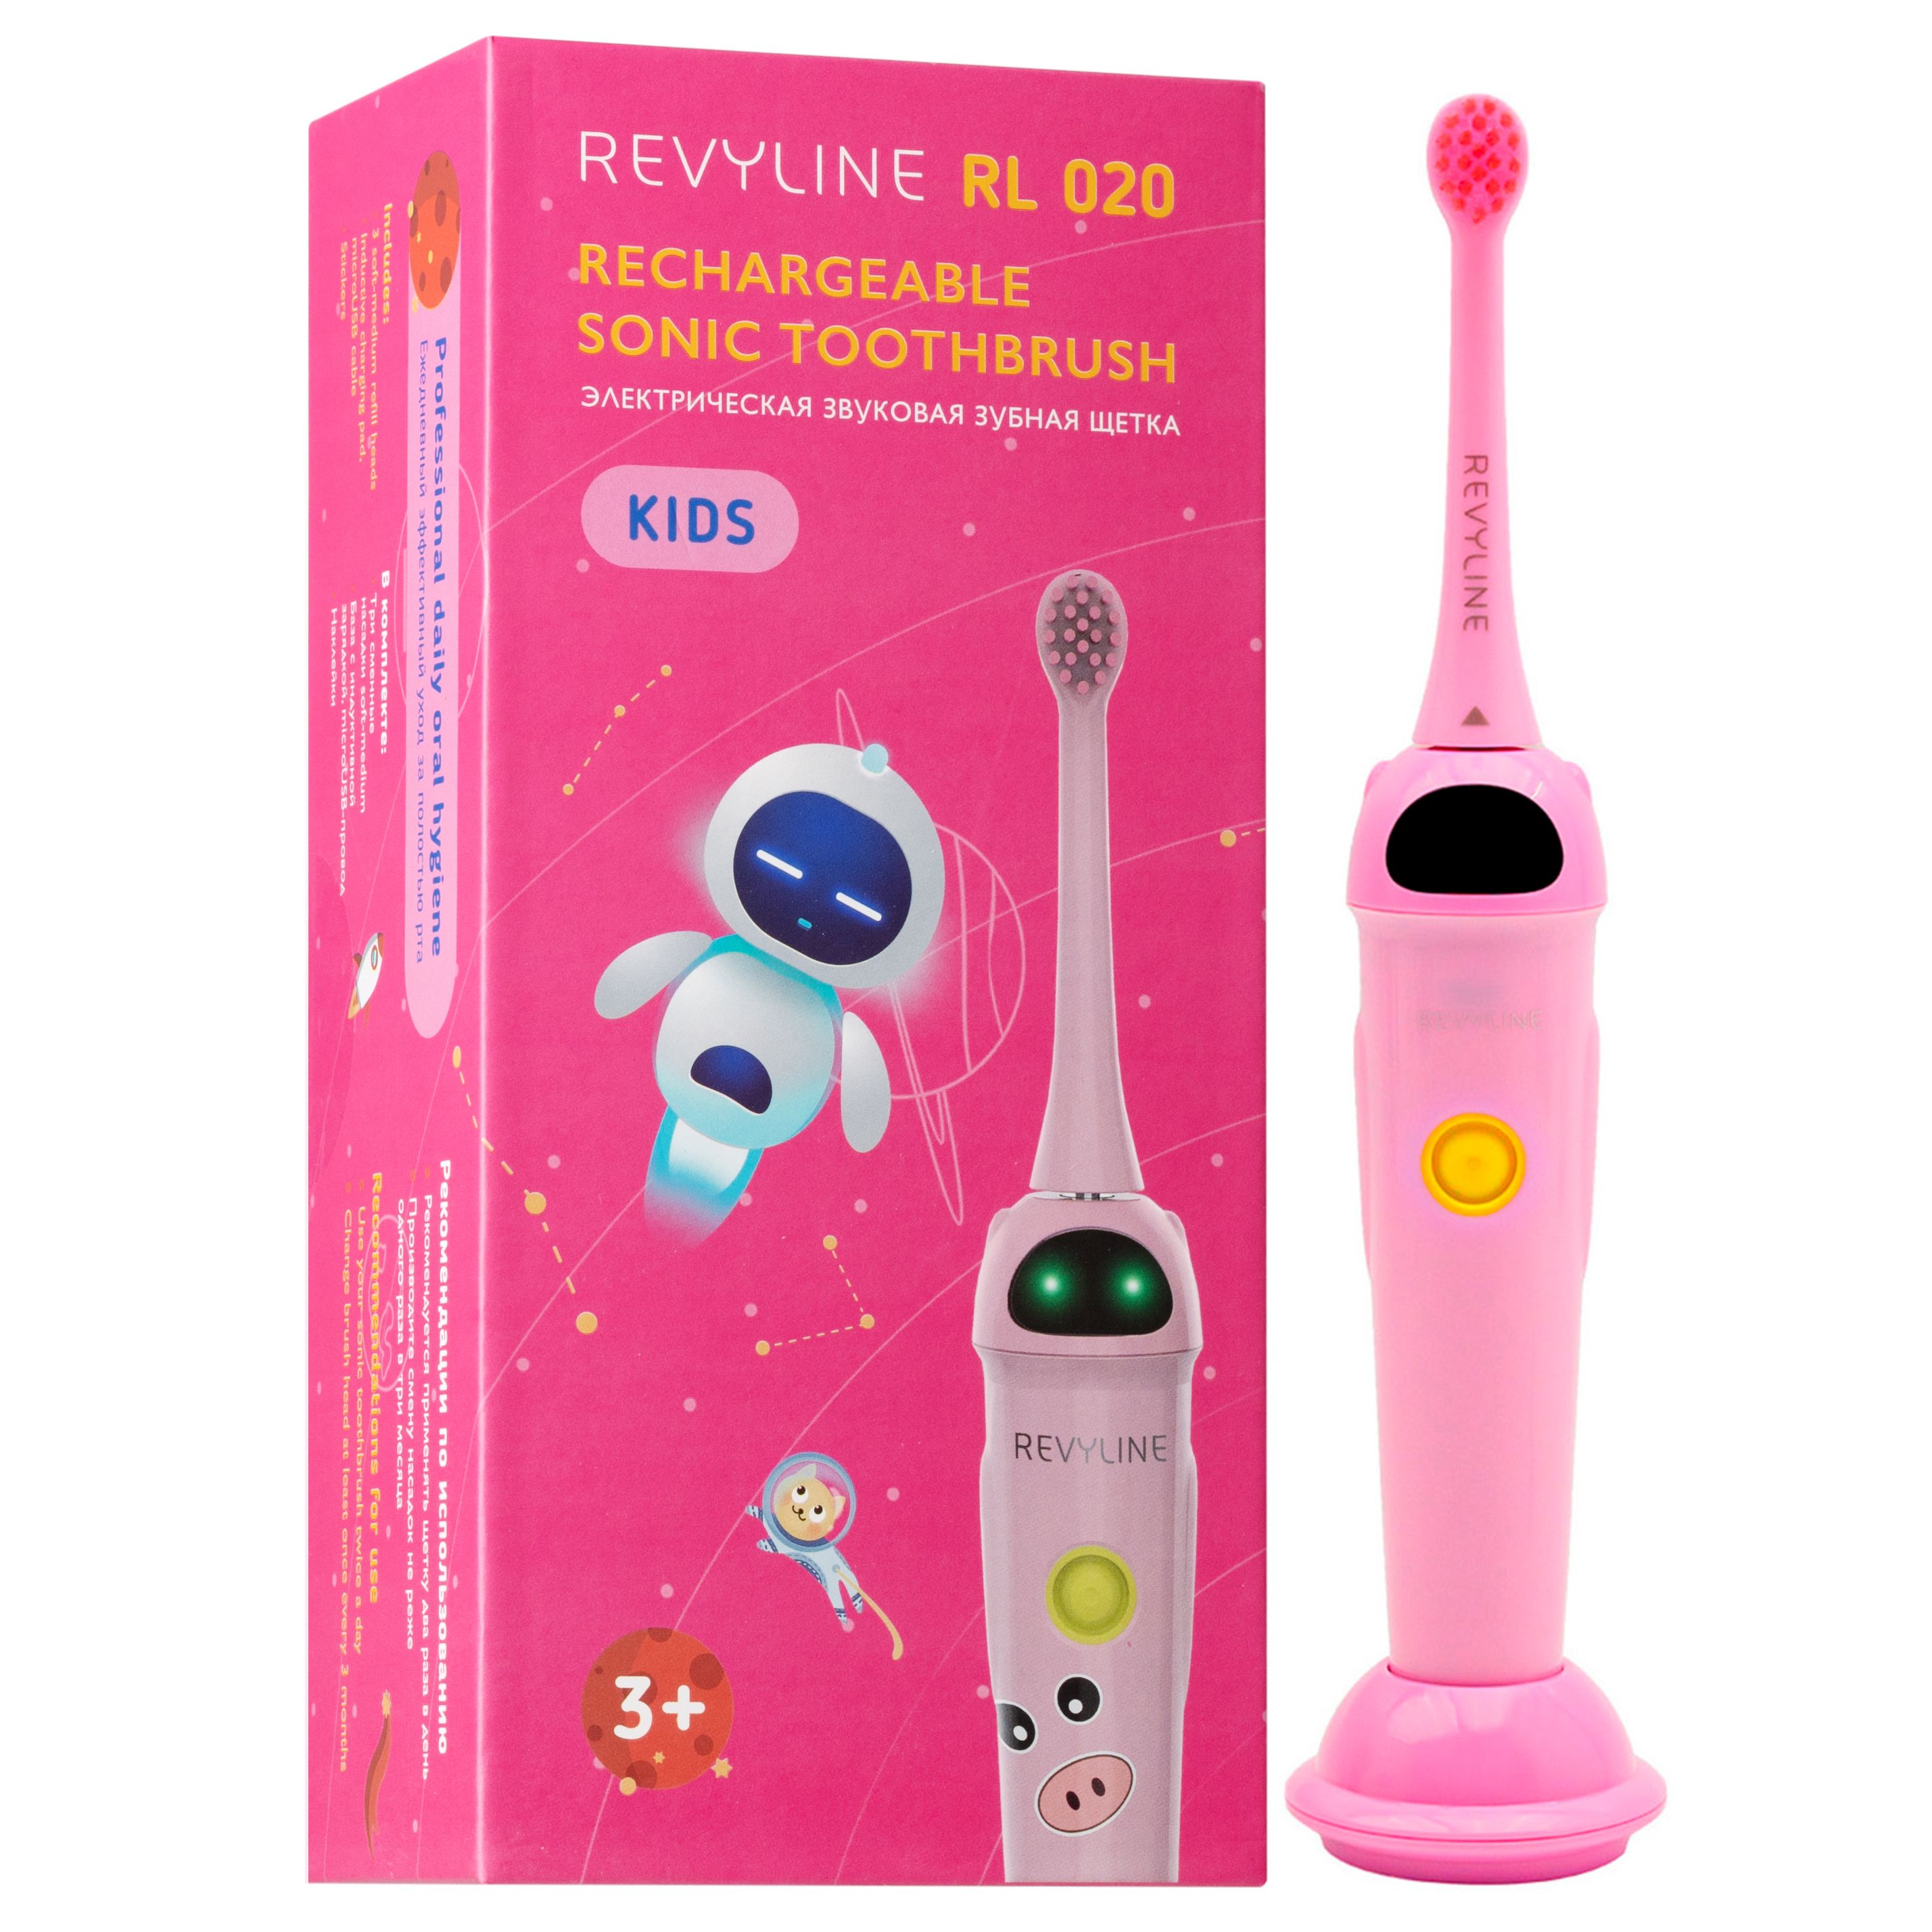 Revyline щетки купить. Звуковая зубная щётка Revyline RL 020 Kids. Revyline звуковая щетка детская. Revyline детская зубная щетка электрическая. Электрическая зубная щетка Revyline rl010 Pink.